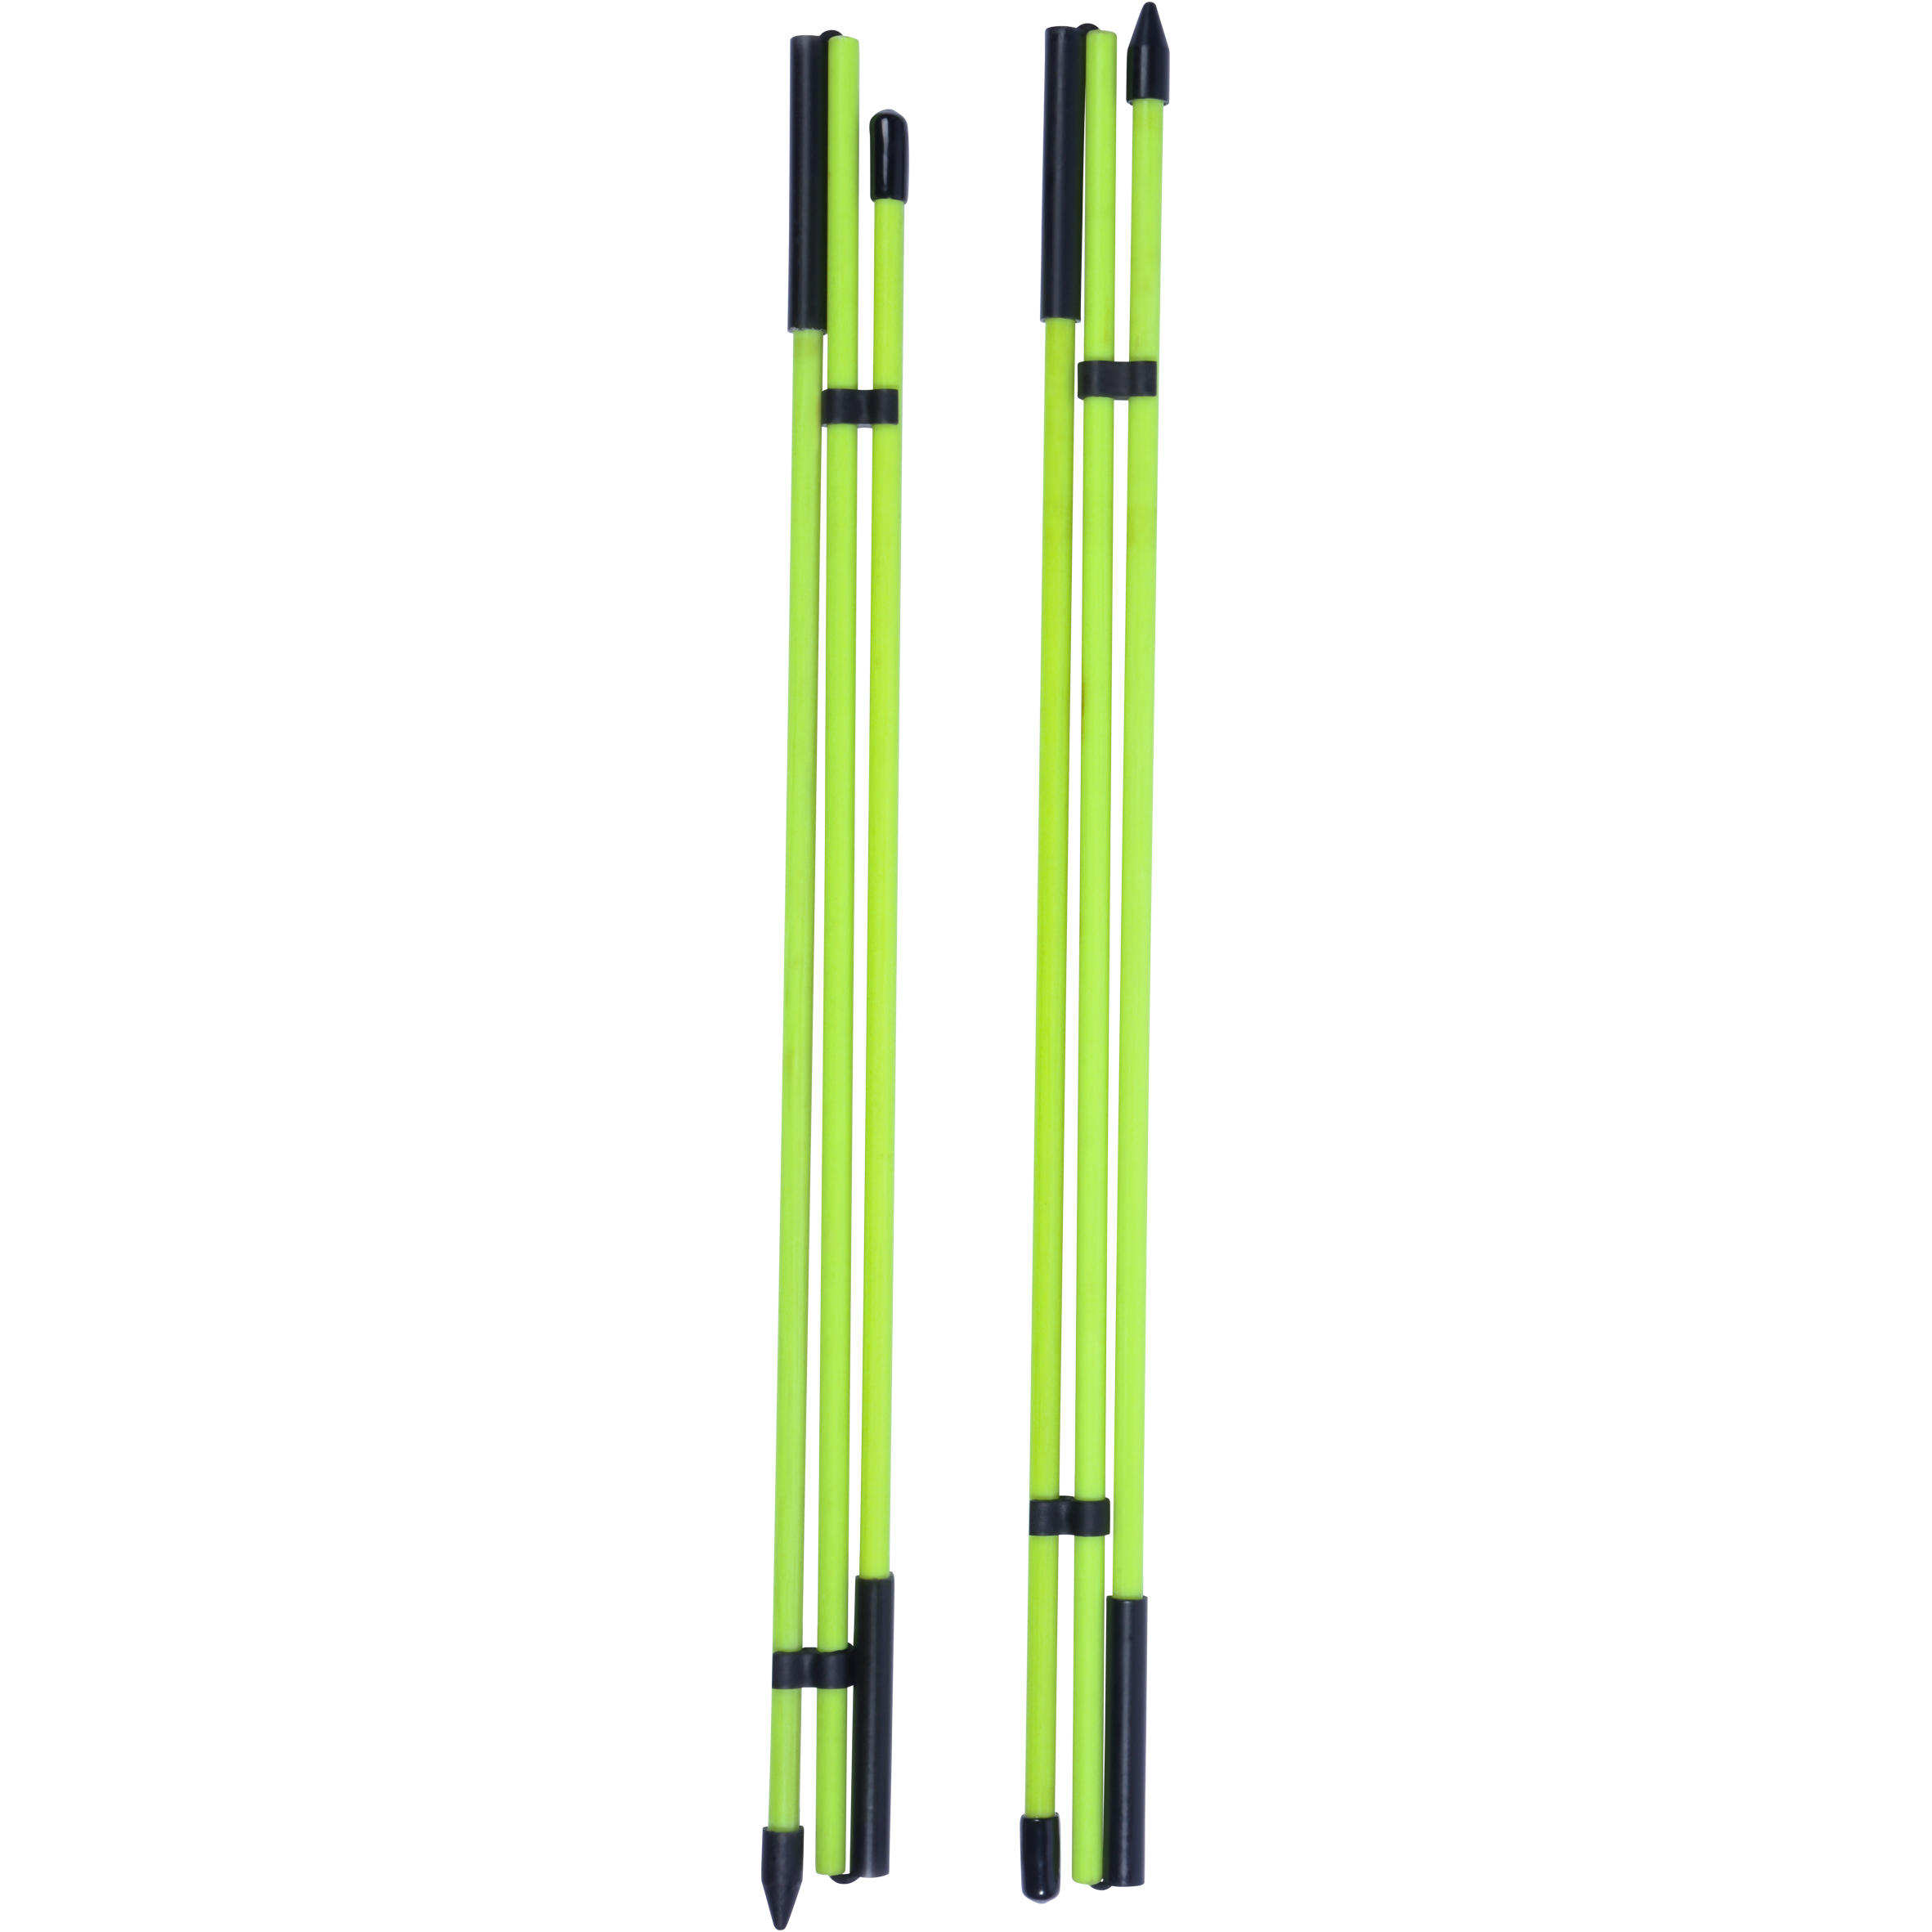 [ส่งฟรี ] ไม้จัดแนว 2 ชิ้น (สีเหลือง) Alignment sticks - x2 Yellow อุปกรณ์กอล์ฟ ของแท้ รับประกัน